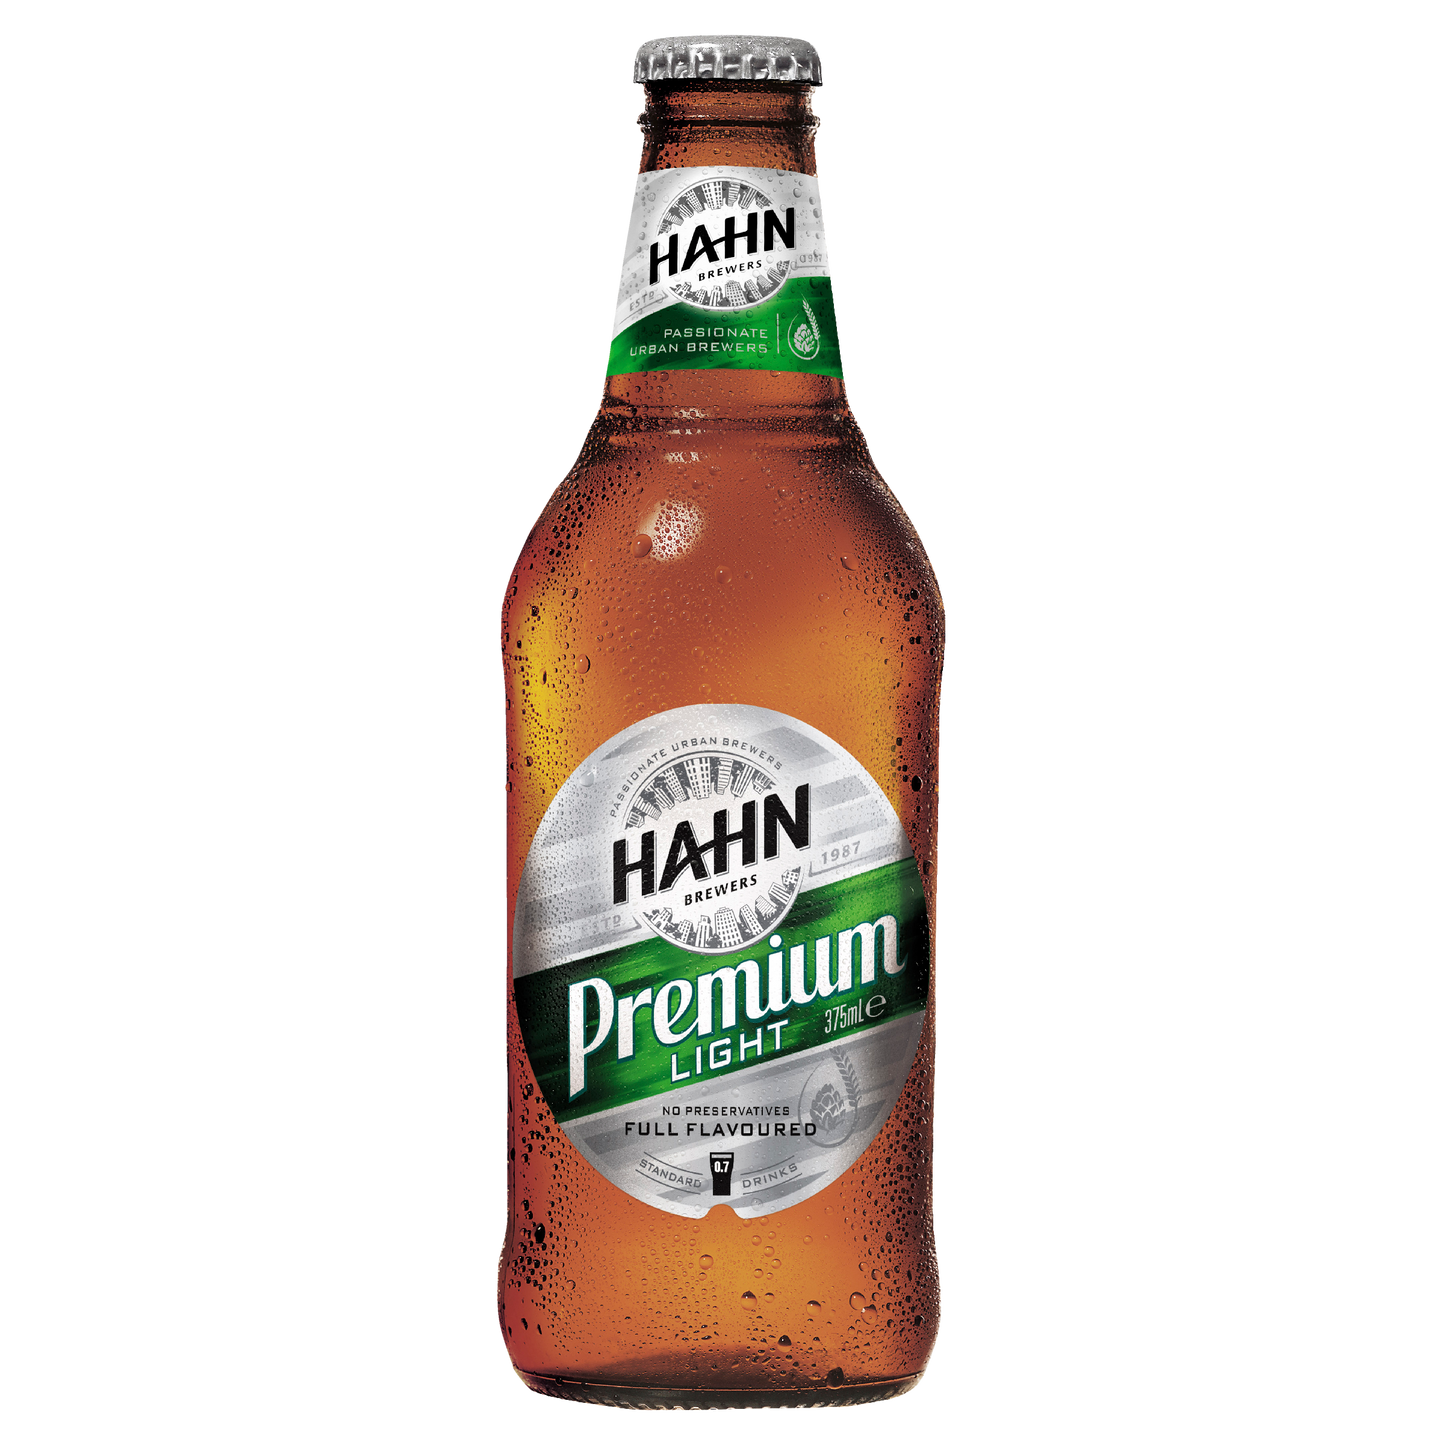 Hahn Premium Light Bottle 375ml